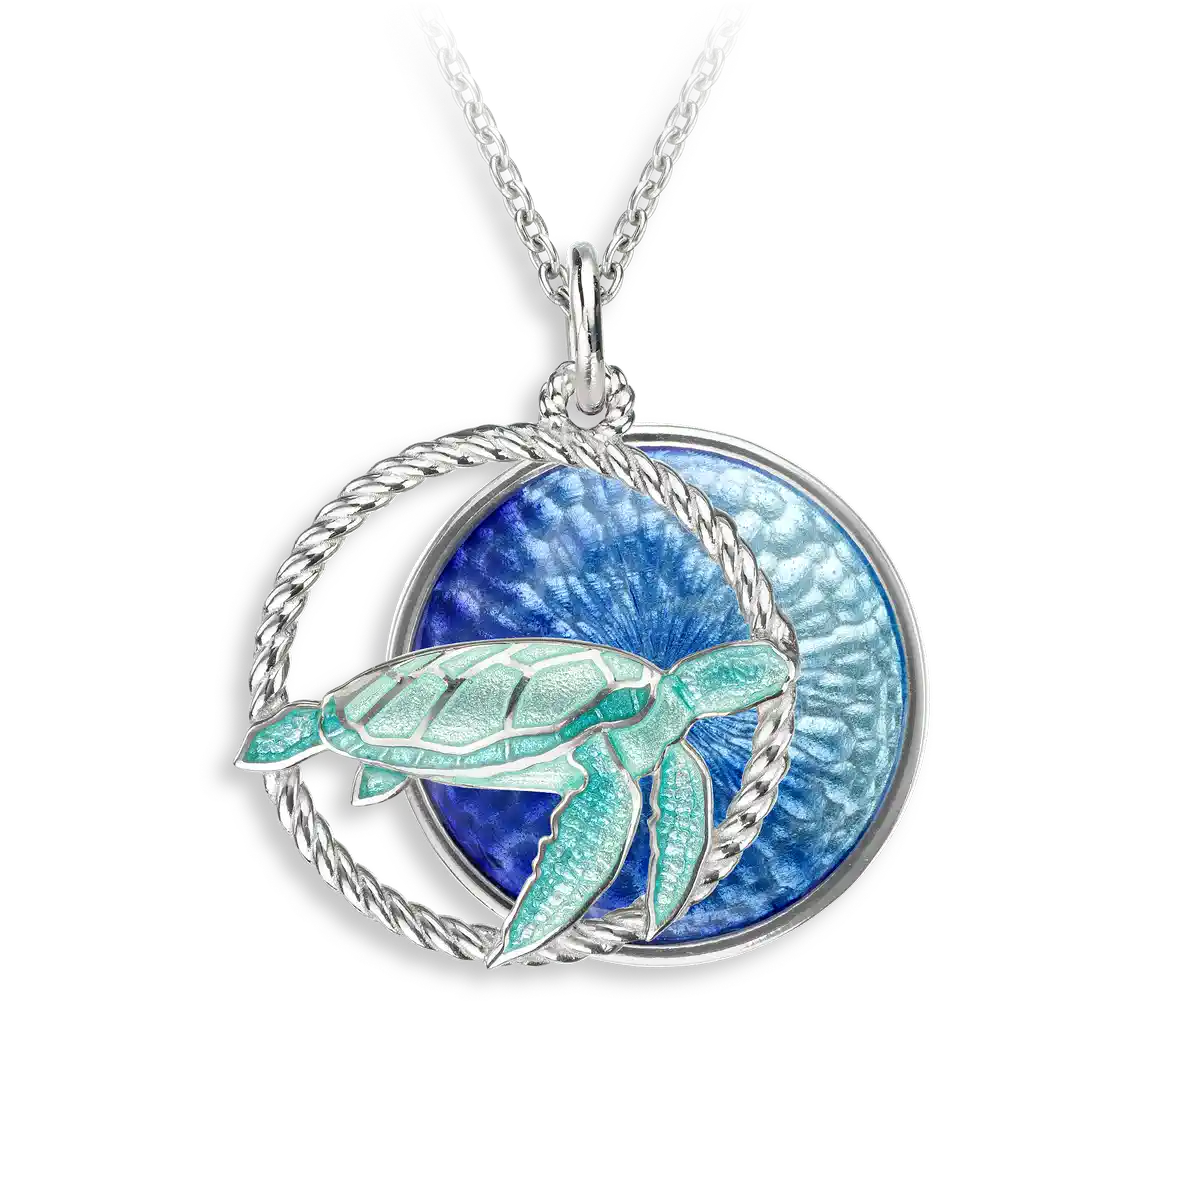 Blue Sea Turtle Necklace